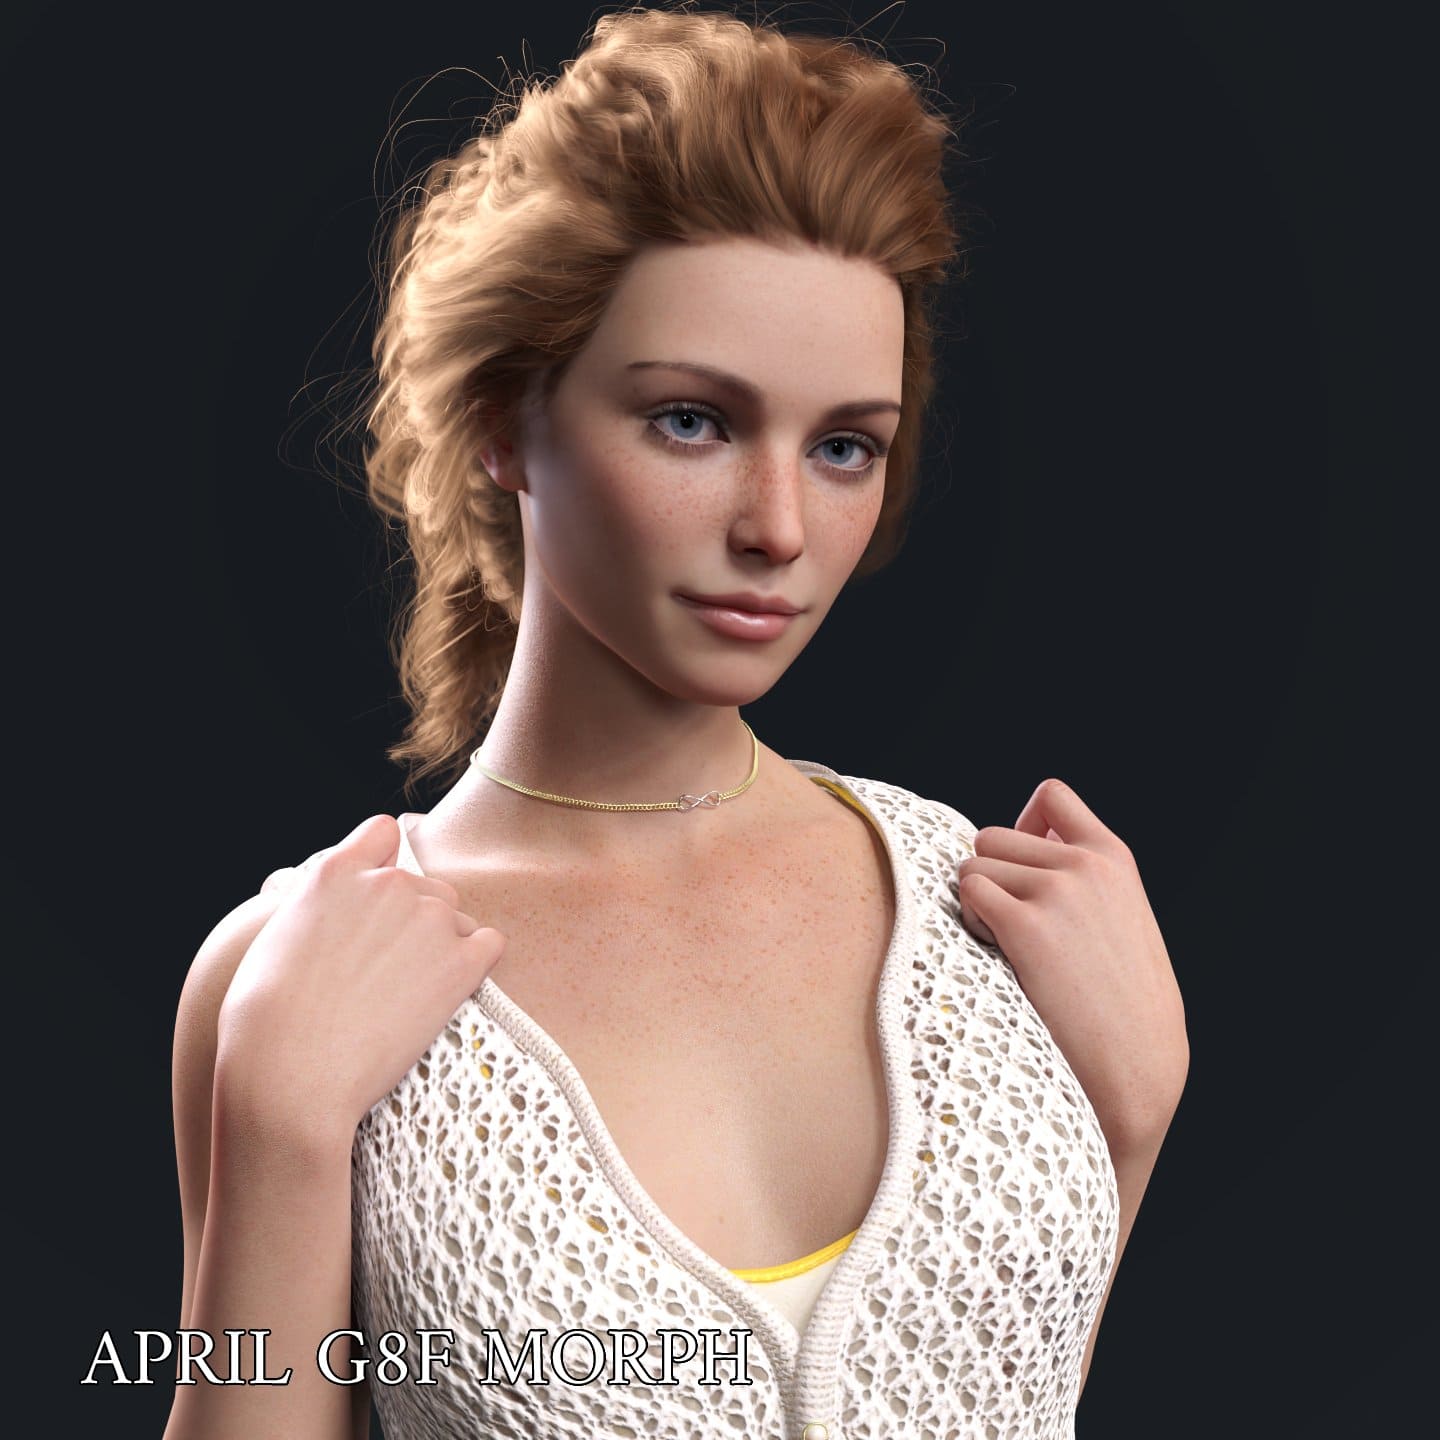 April Character Morph For Genesis 8 Females_DAZ3D下载站